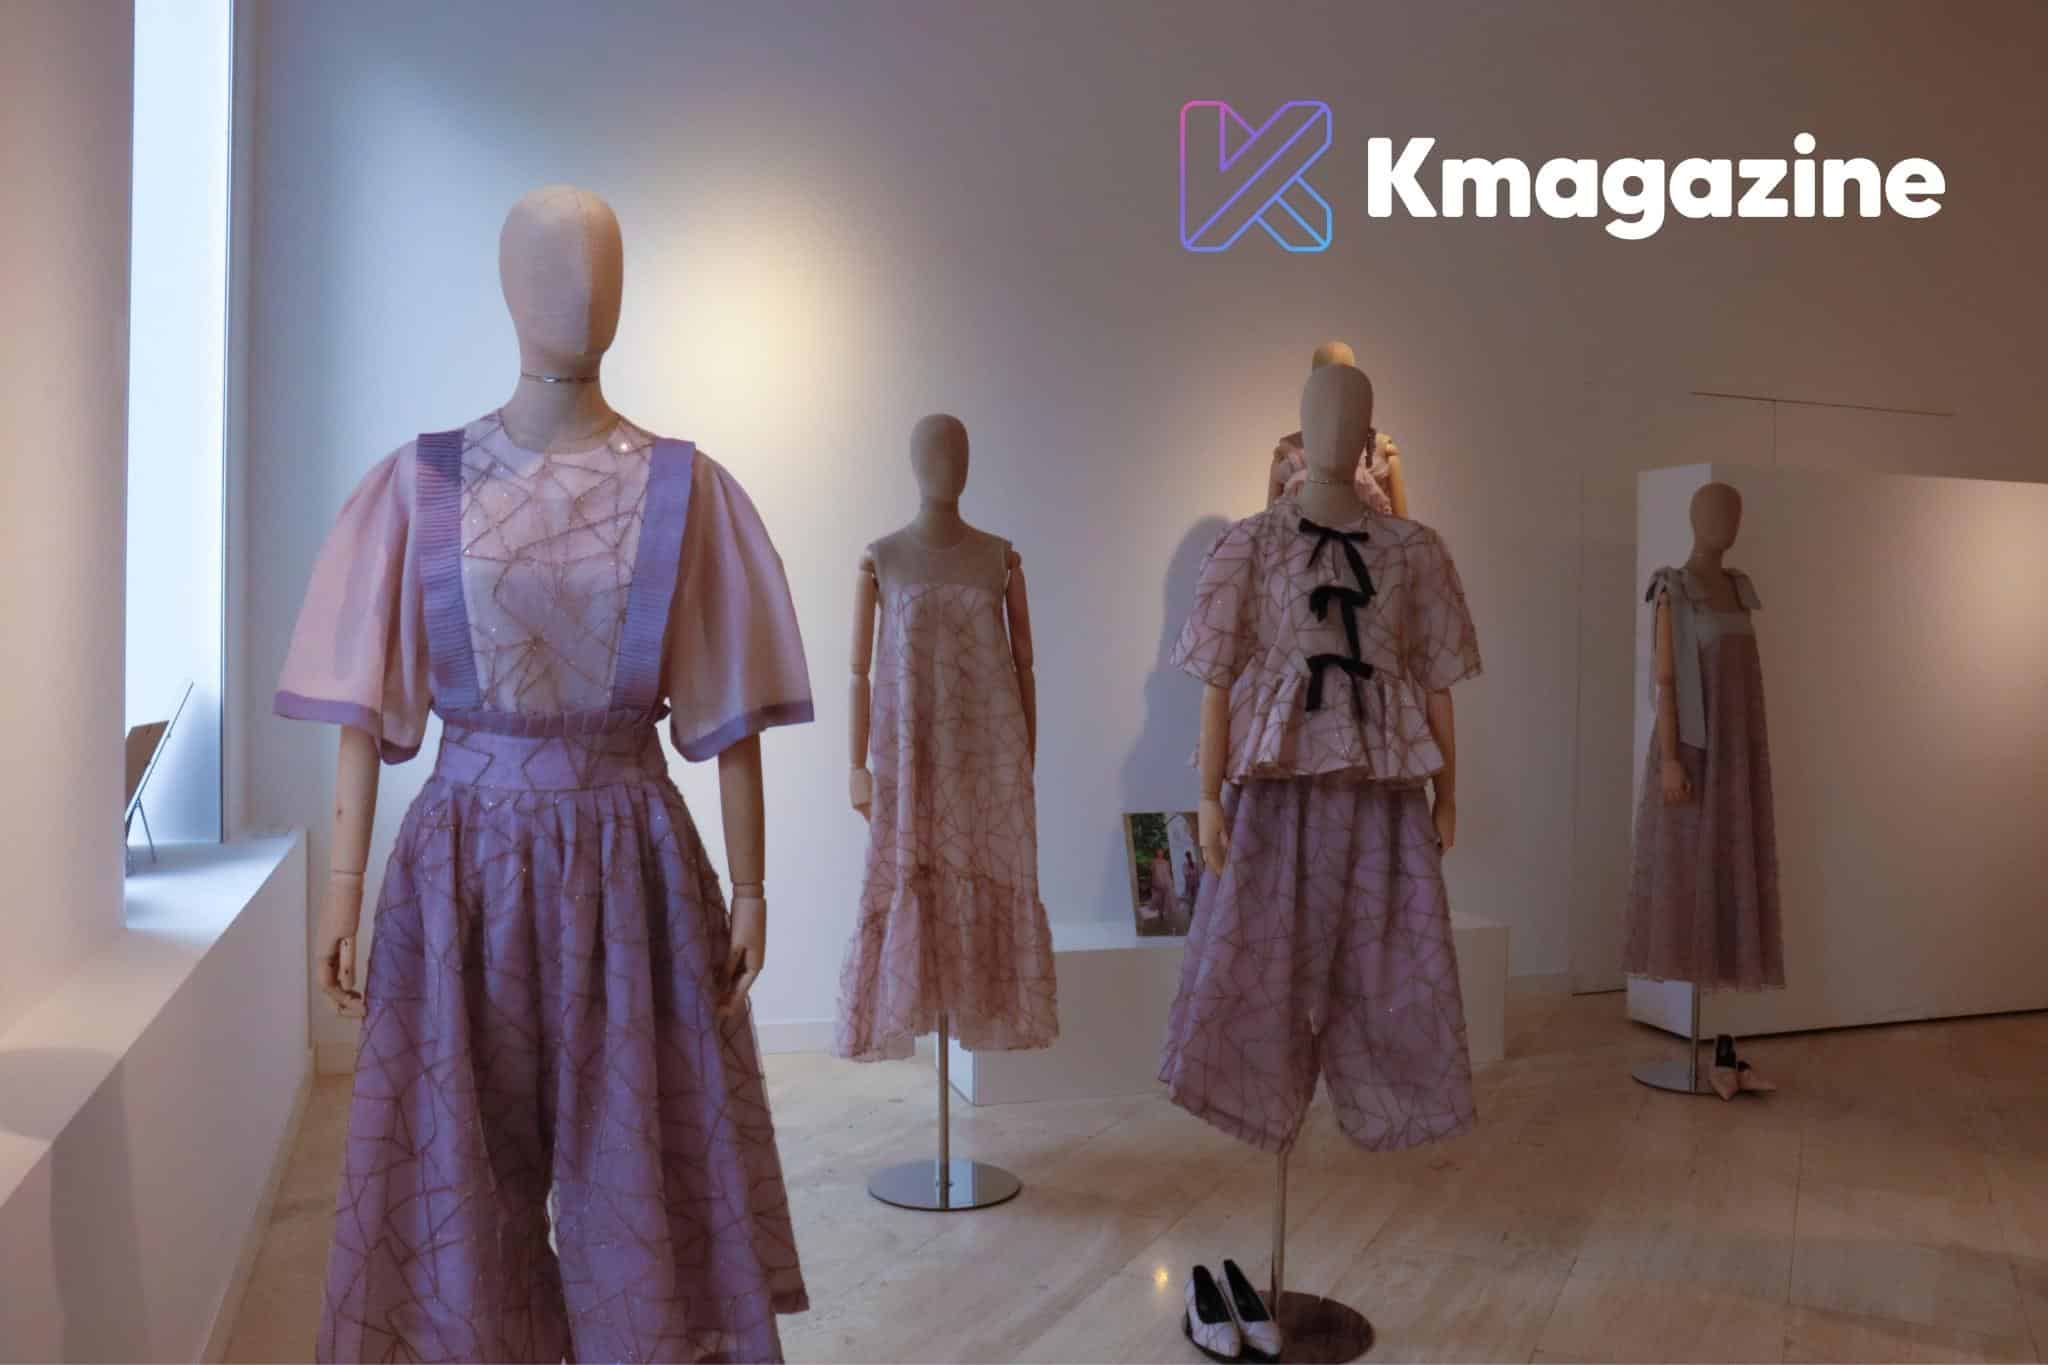 Expo de K-fashion en Madrid Kim A Young